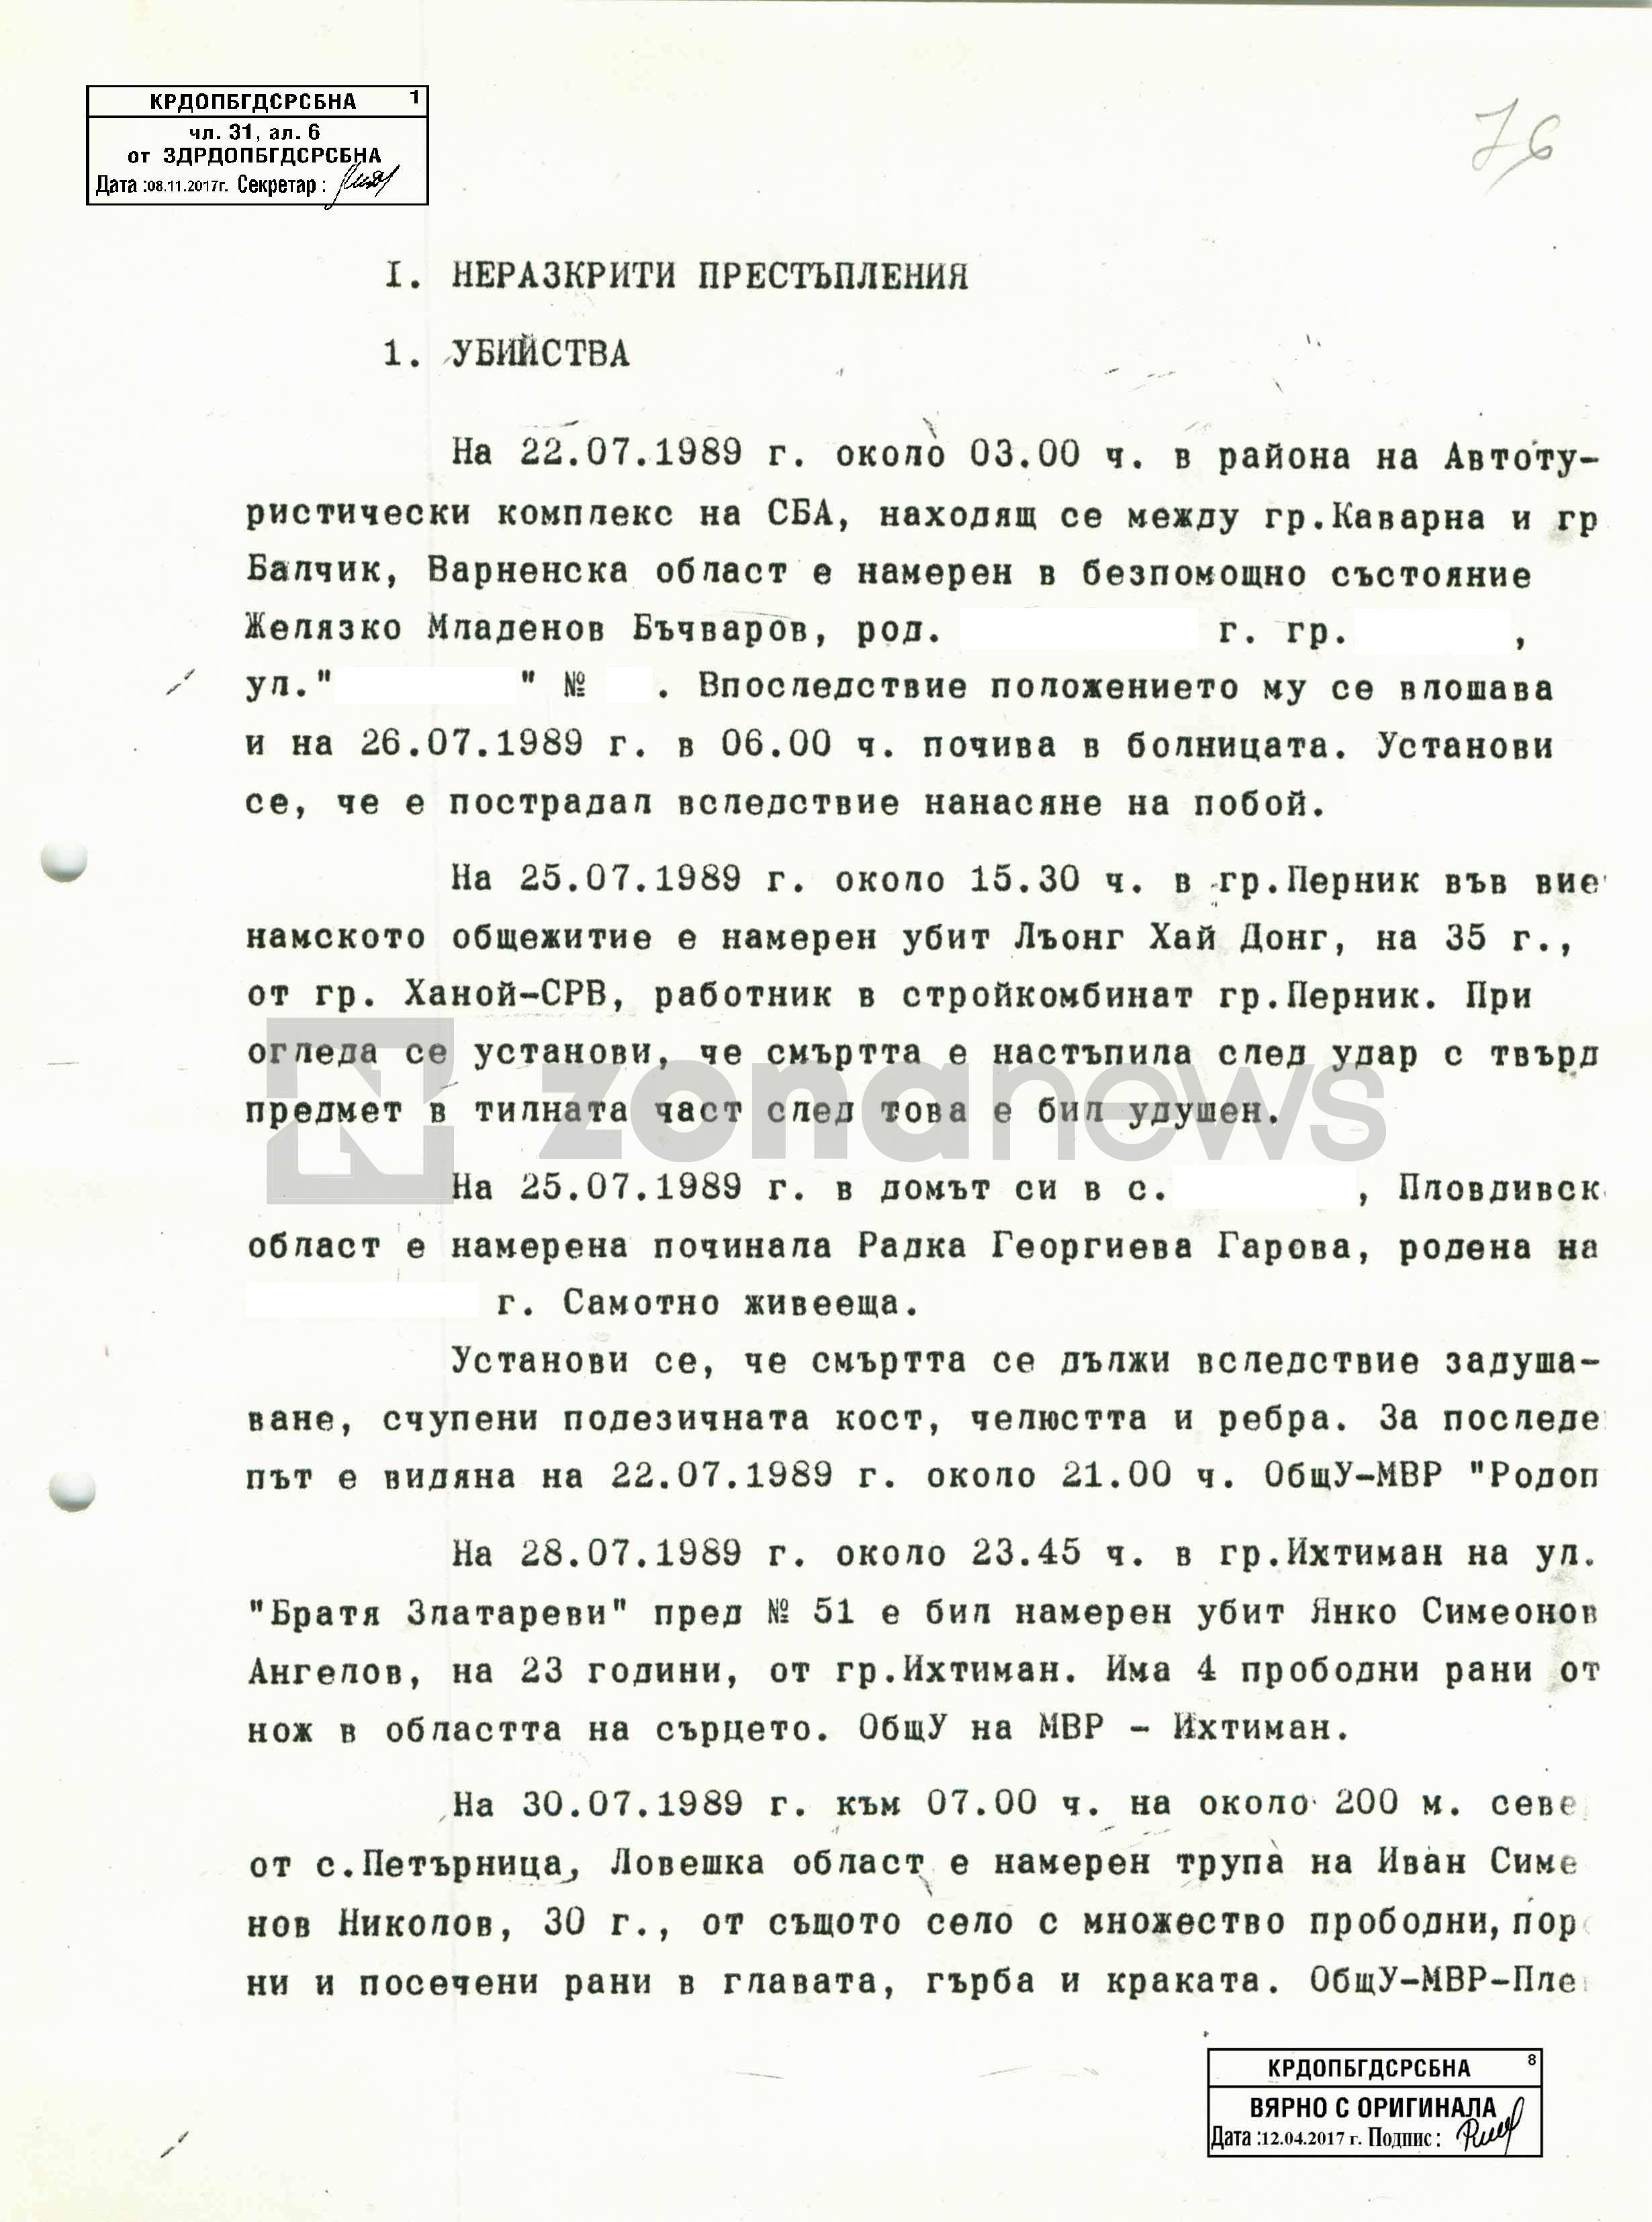 Пет убийства в комунистическа България само за една седмица - 22.07-30.07.87 г.